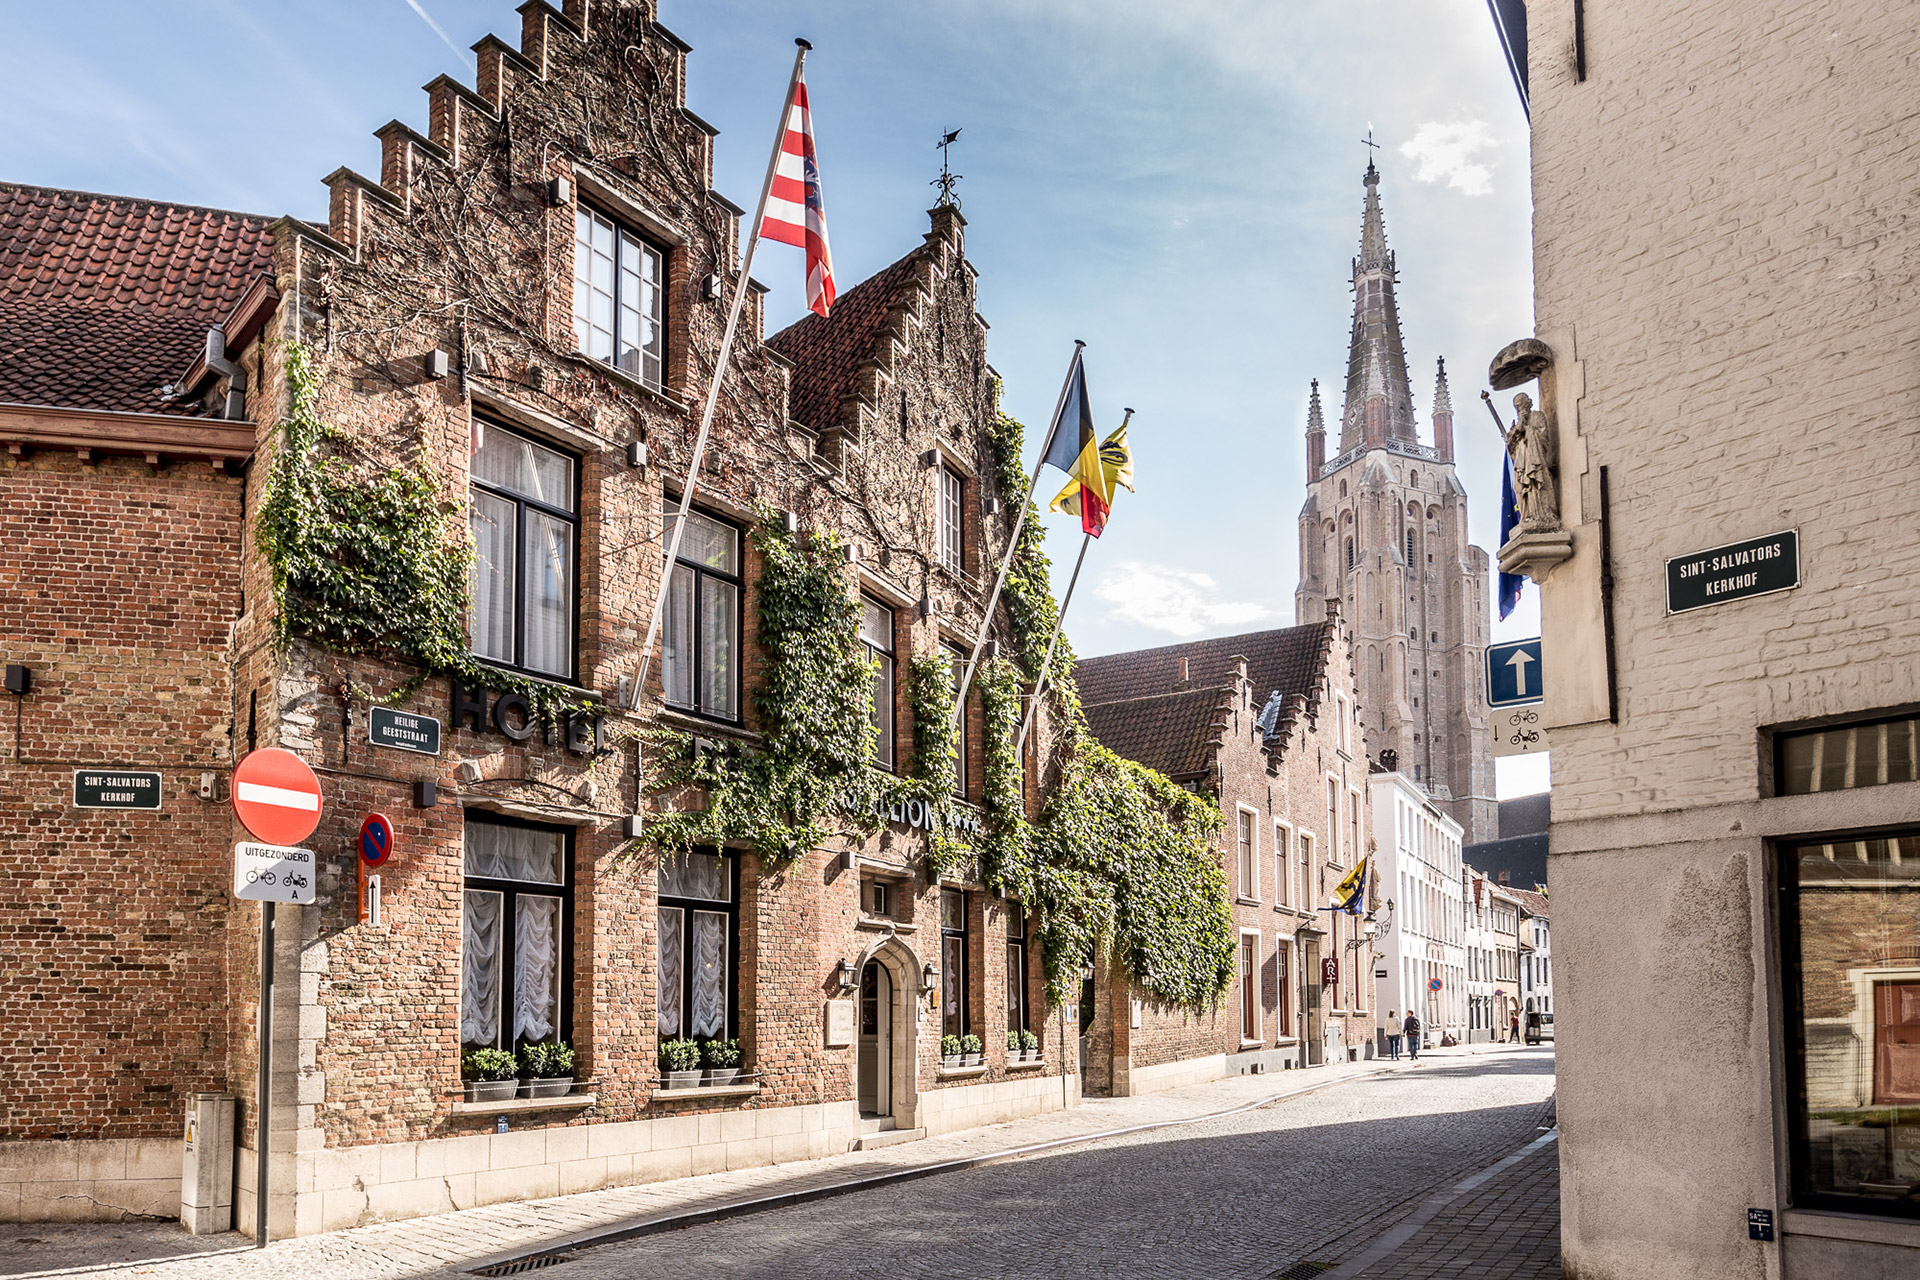 Hotel De Castillion in Brugge